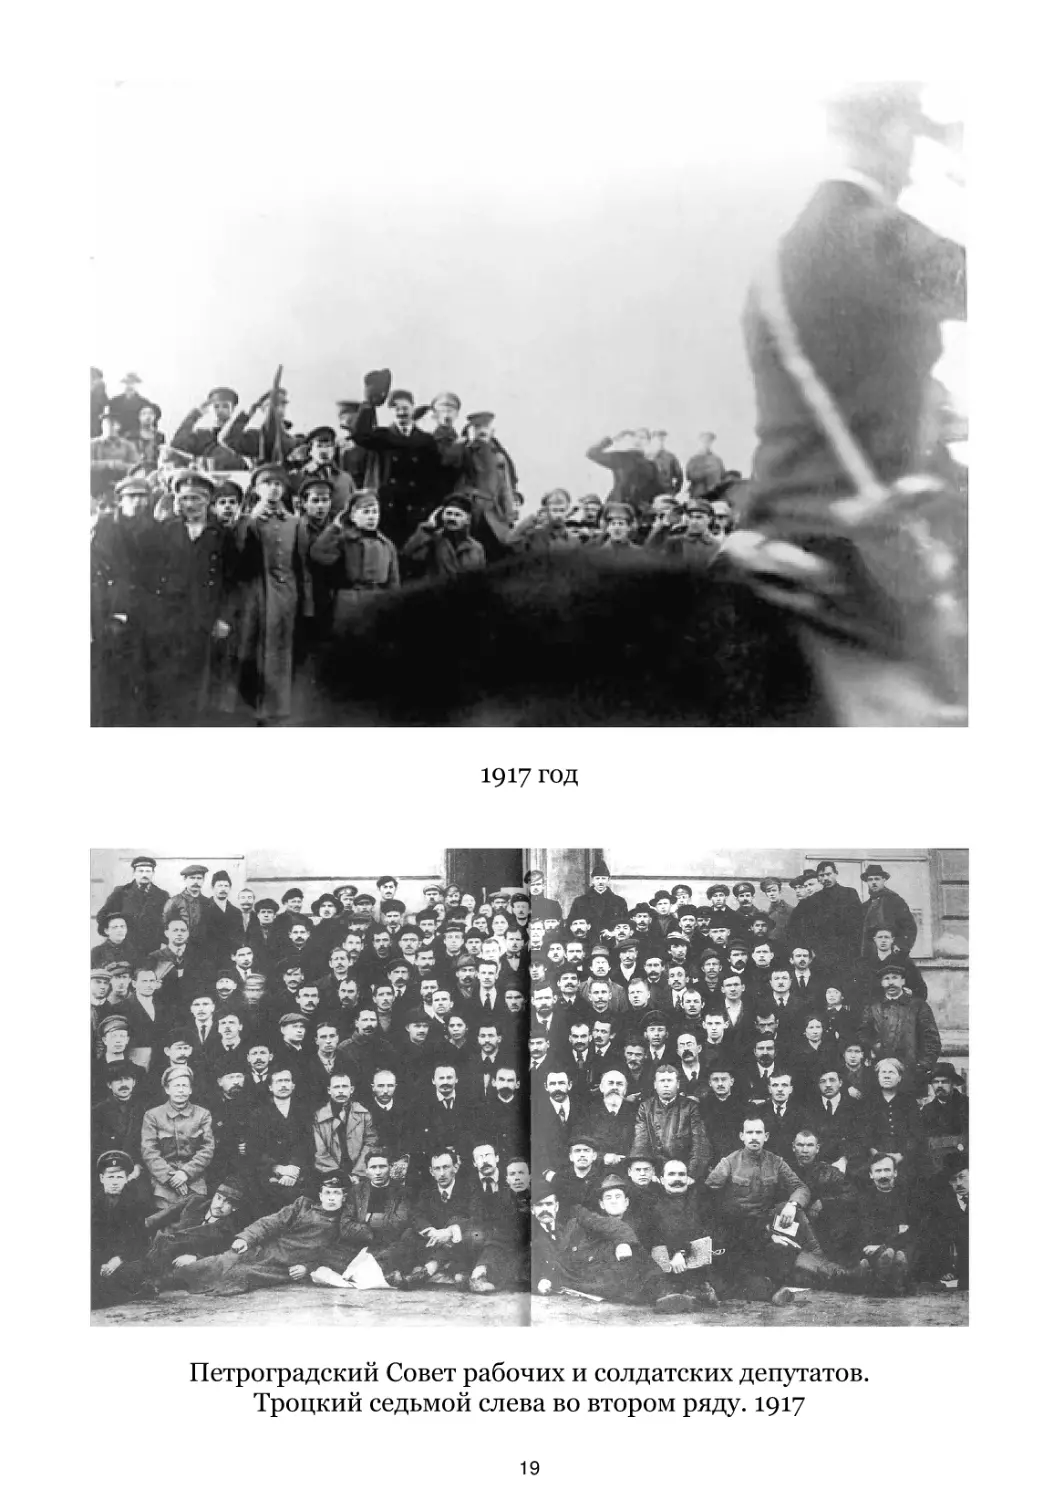 1917 год
Петроградский Совет рабочих и солдатских депутатов. 1917